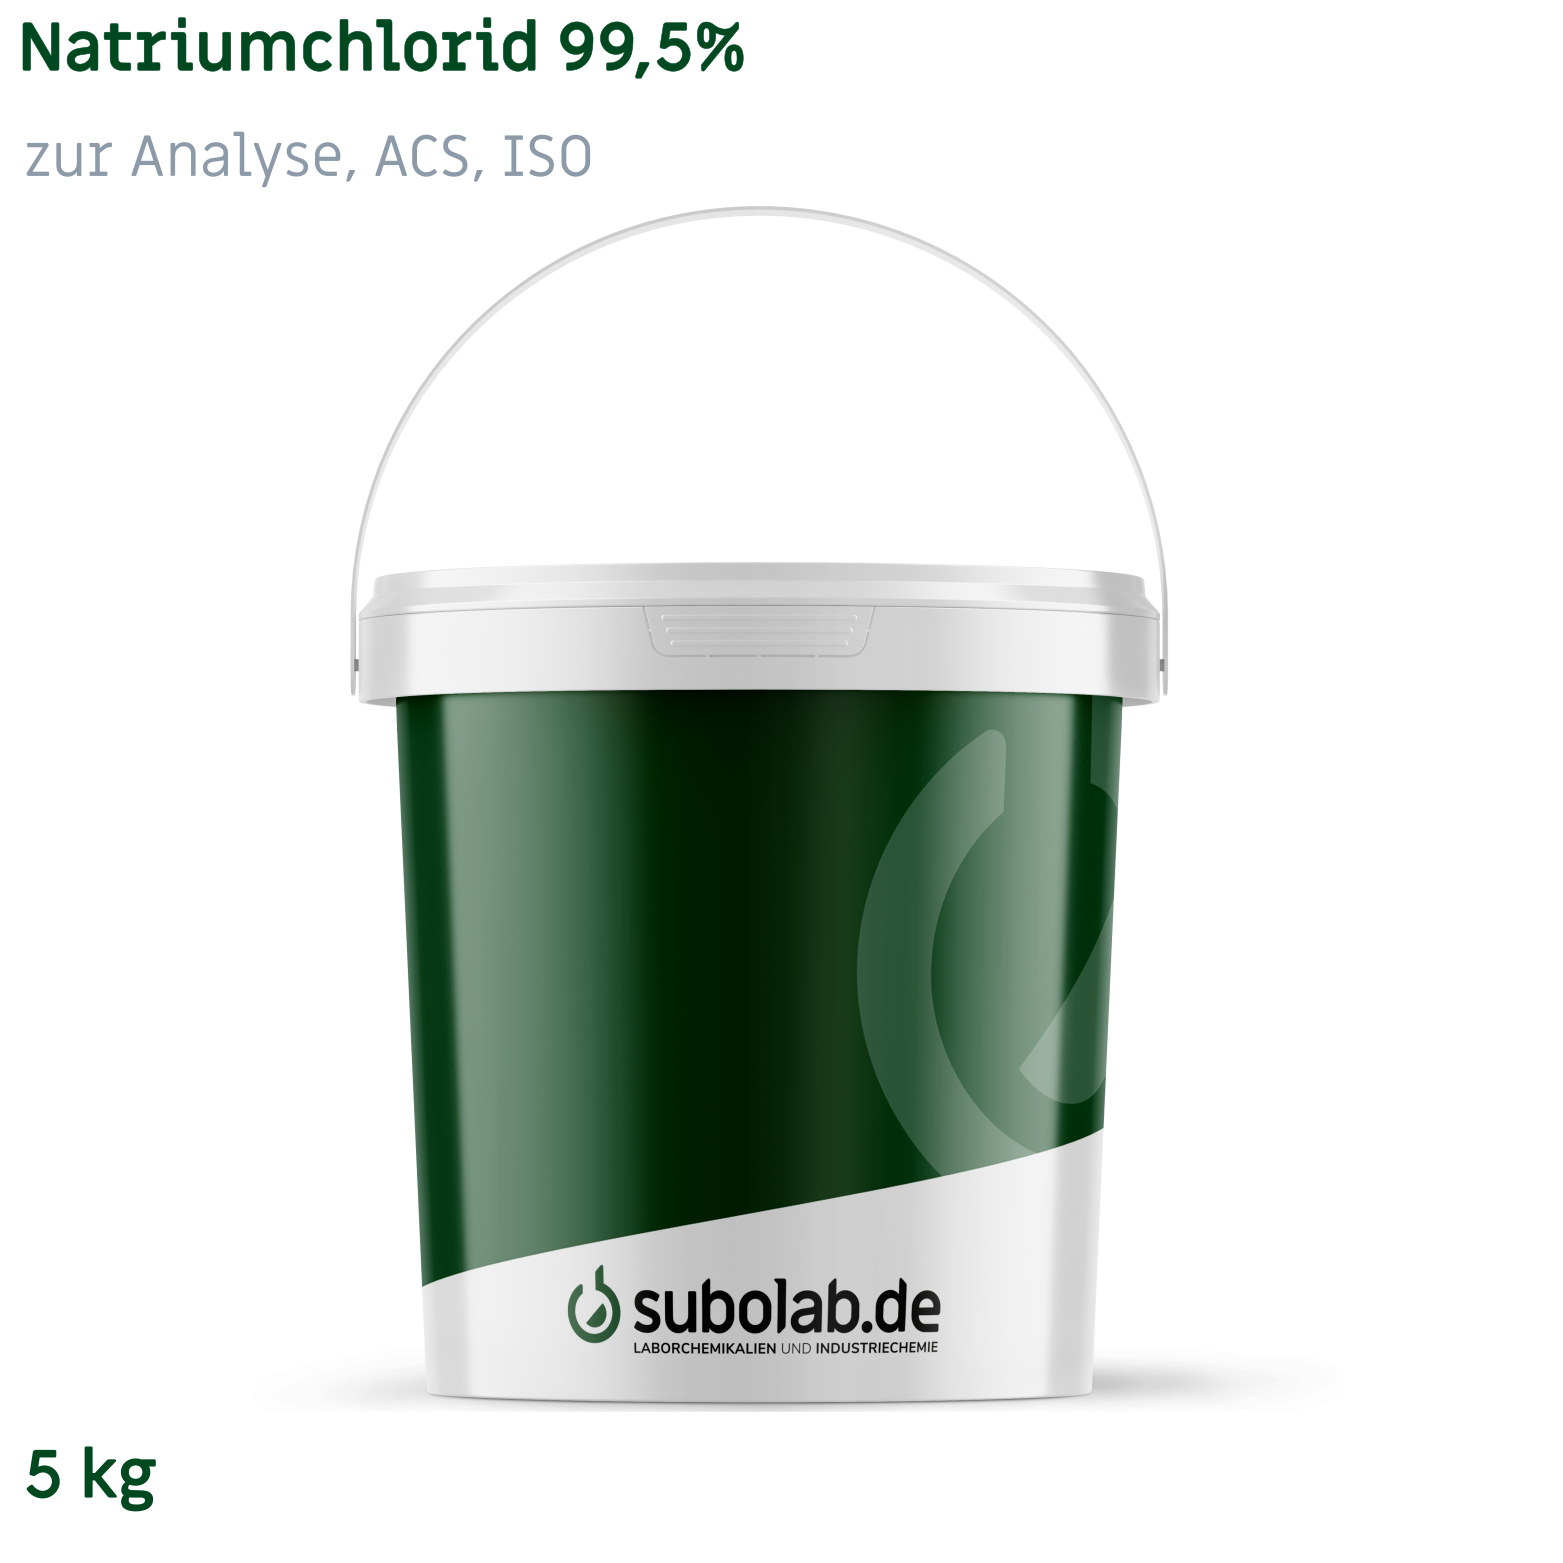 Bild von Natriumchlorid 99,5% zur Analyse, ACS, ISO (5 kg)